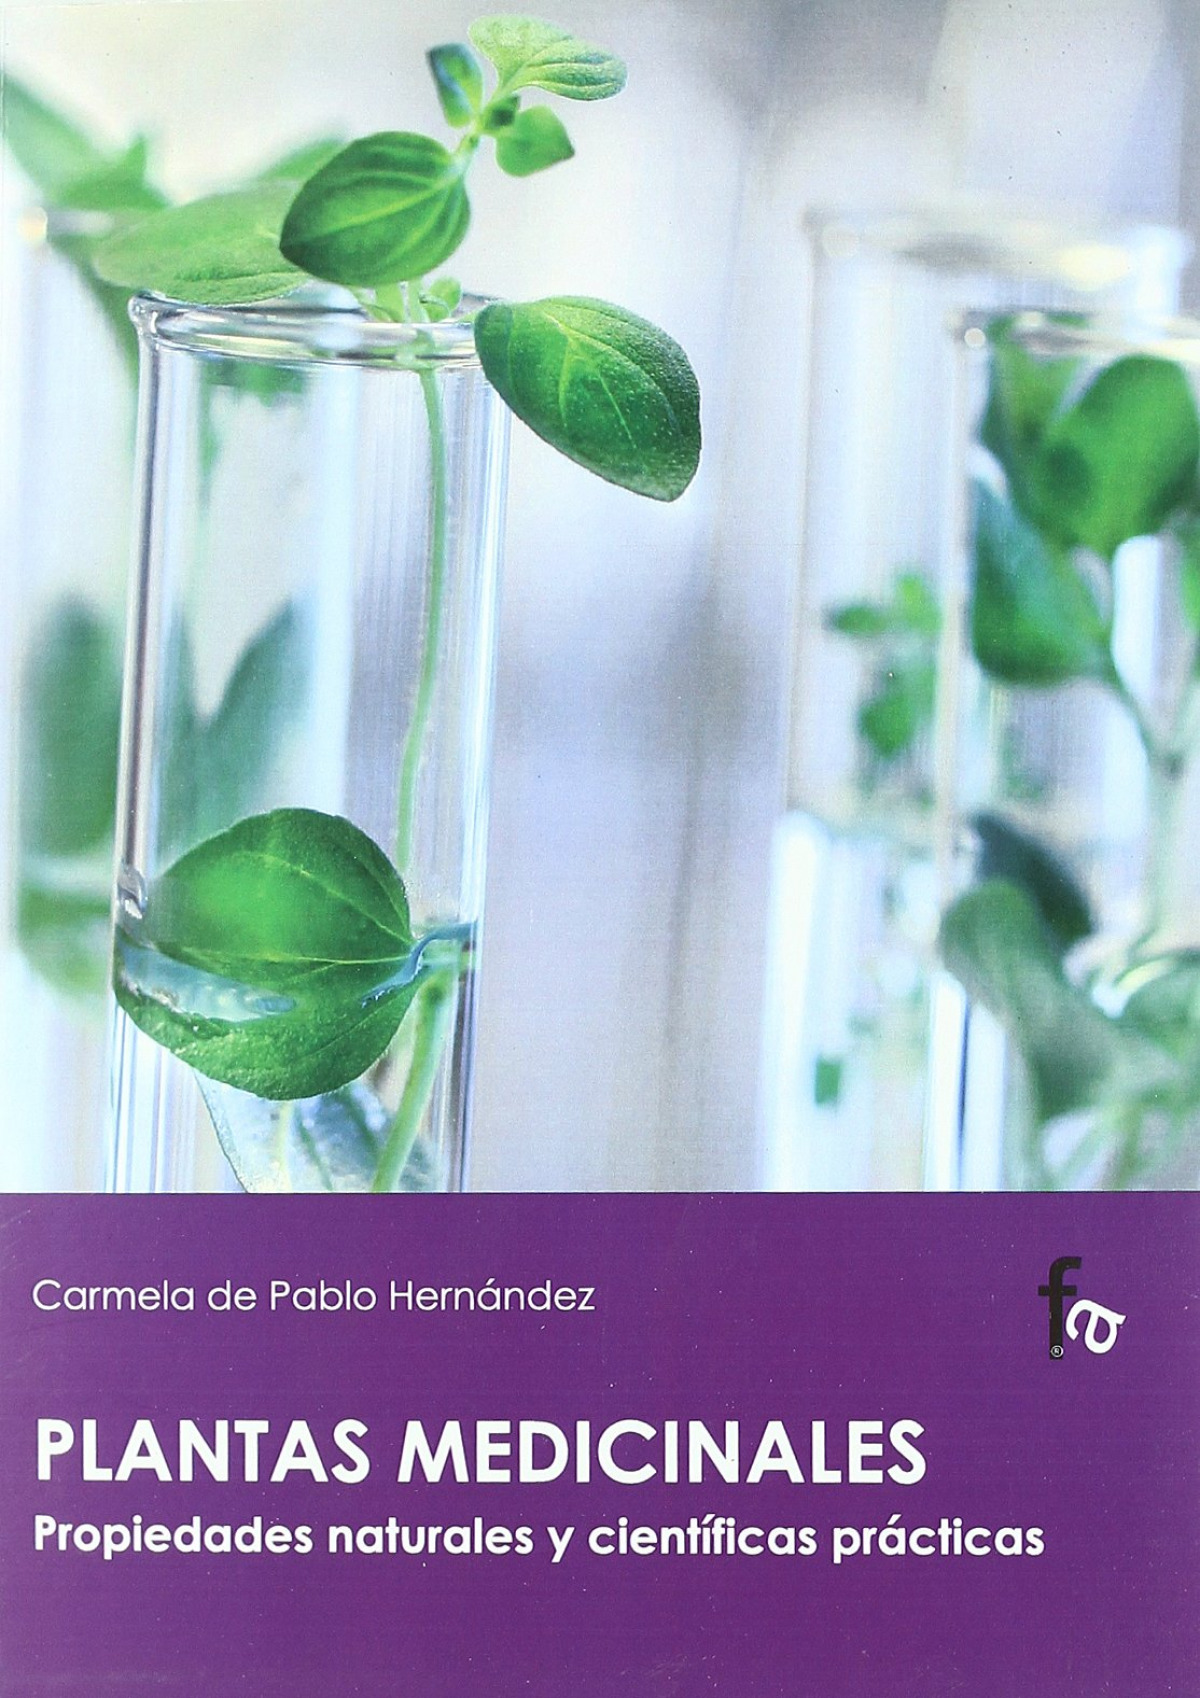 Plantas medicinales s propiedades naturales y científicas pr - Carmela De Pablo Hernández